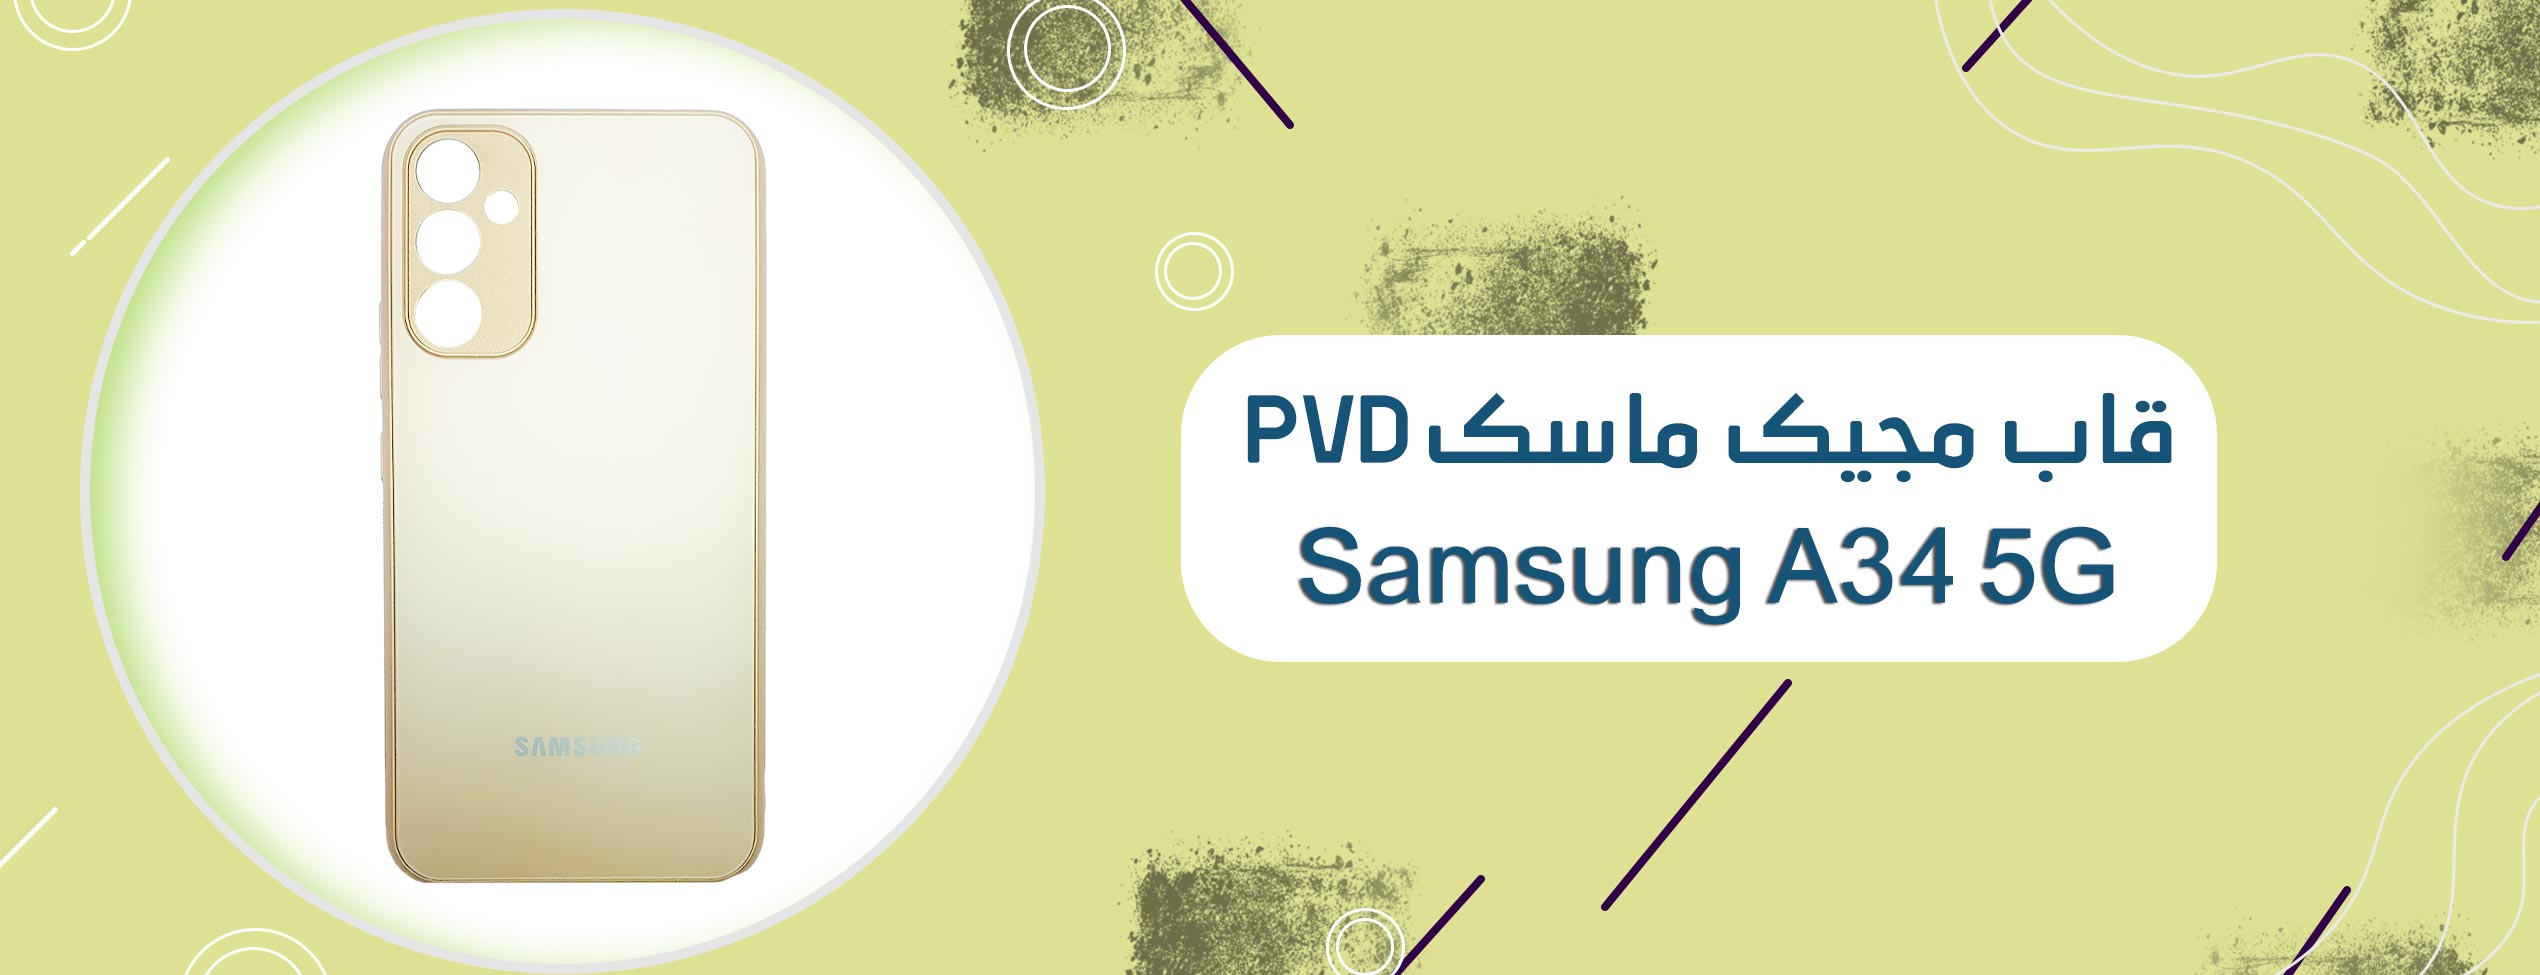 قاب مجیک ماسک PVD گوشی موبایل سامسونگ Samsung A34 5G